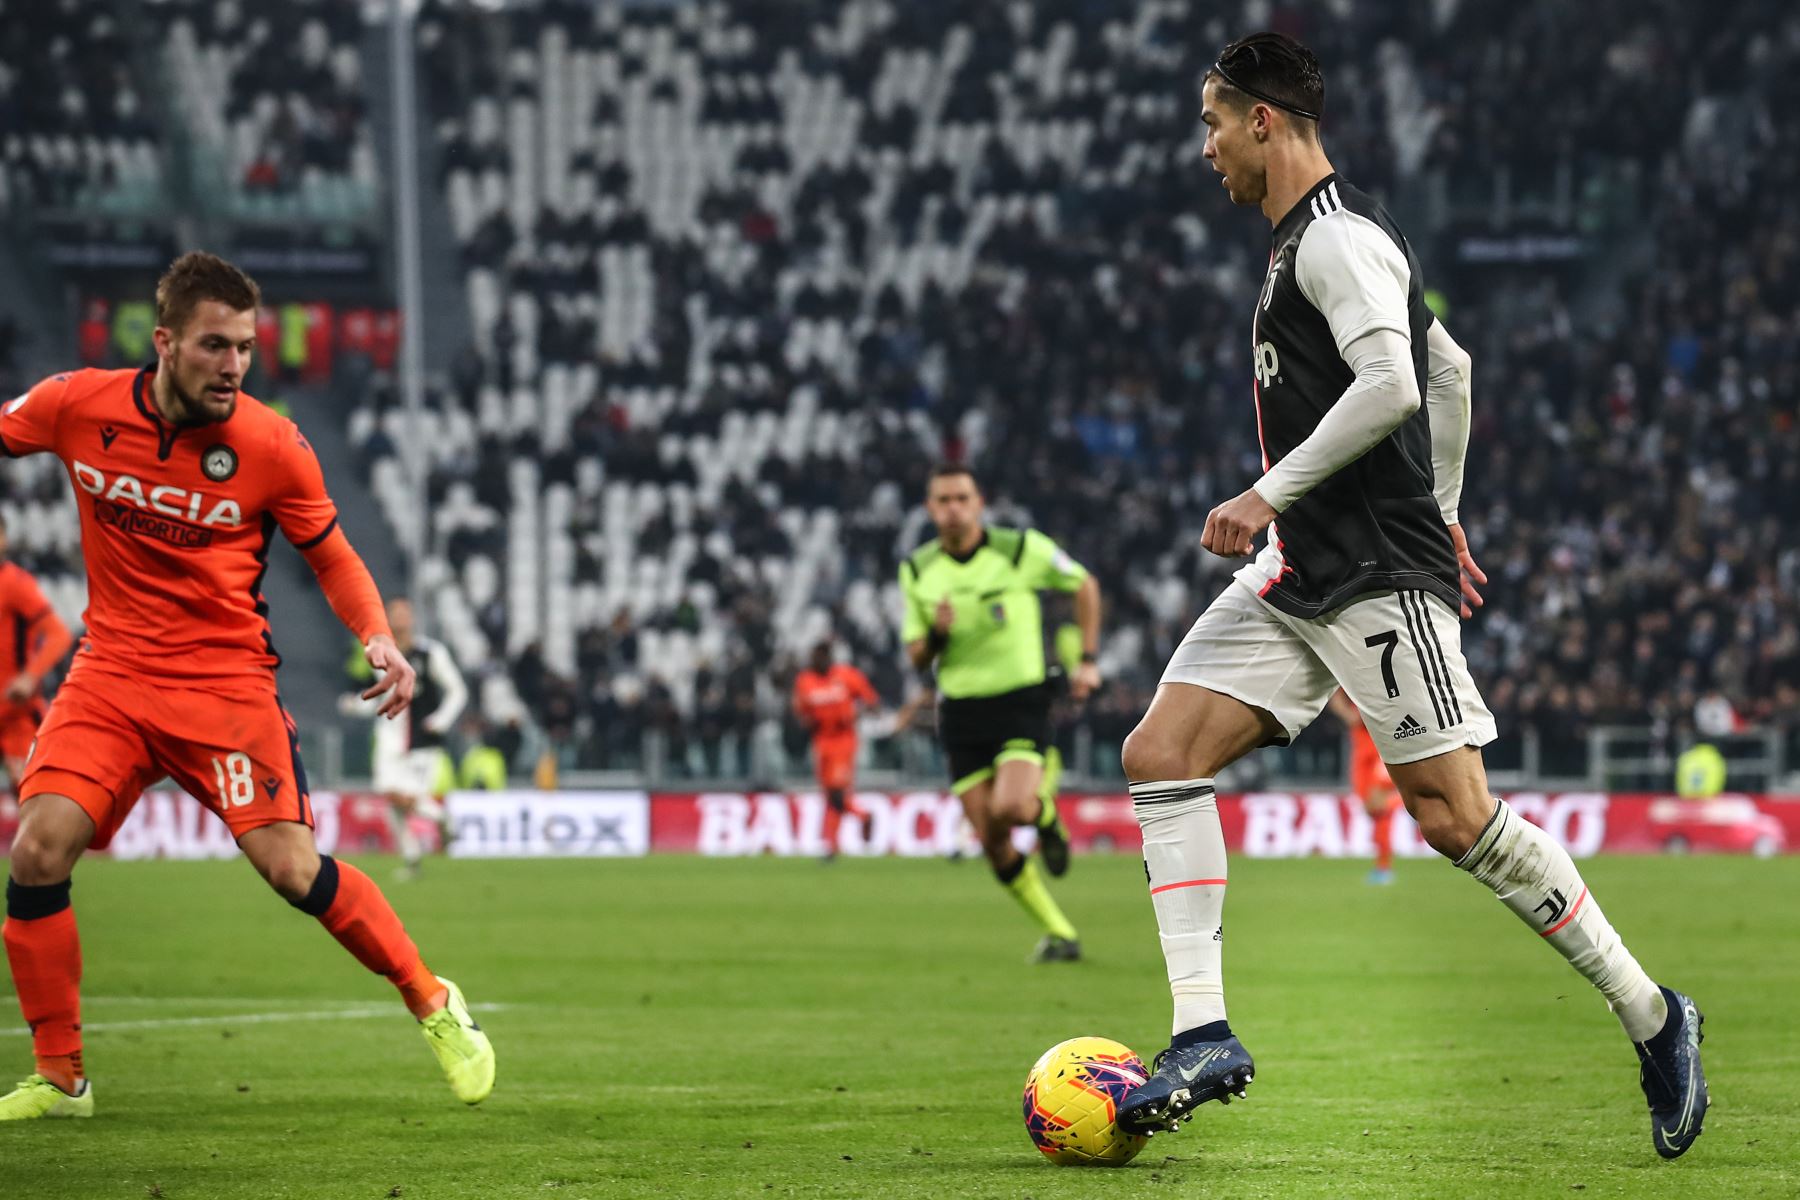 El delantero portugués de la Juventus, Cristiano Ronaldo , desafía al defensor holandés del Udinese durante el partido de fútbol de la Serie A italiana Juventus vs Udinese.
Foto: AFP